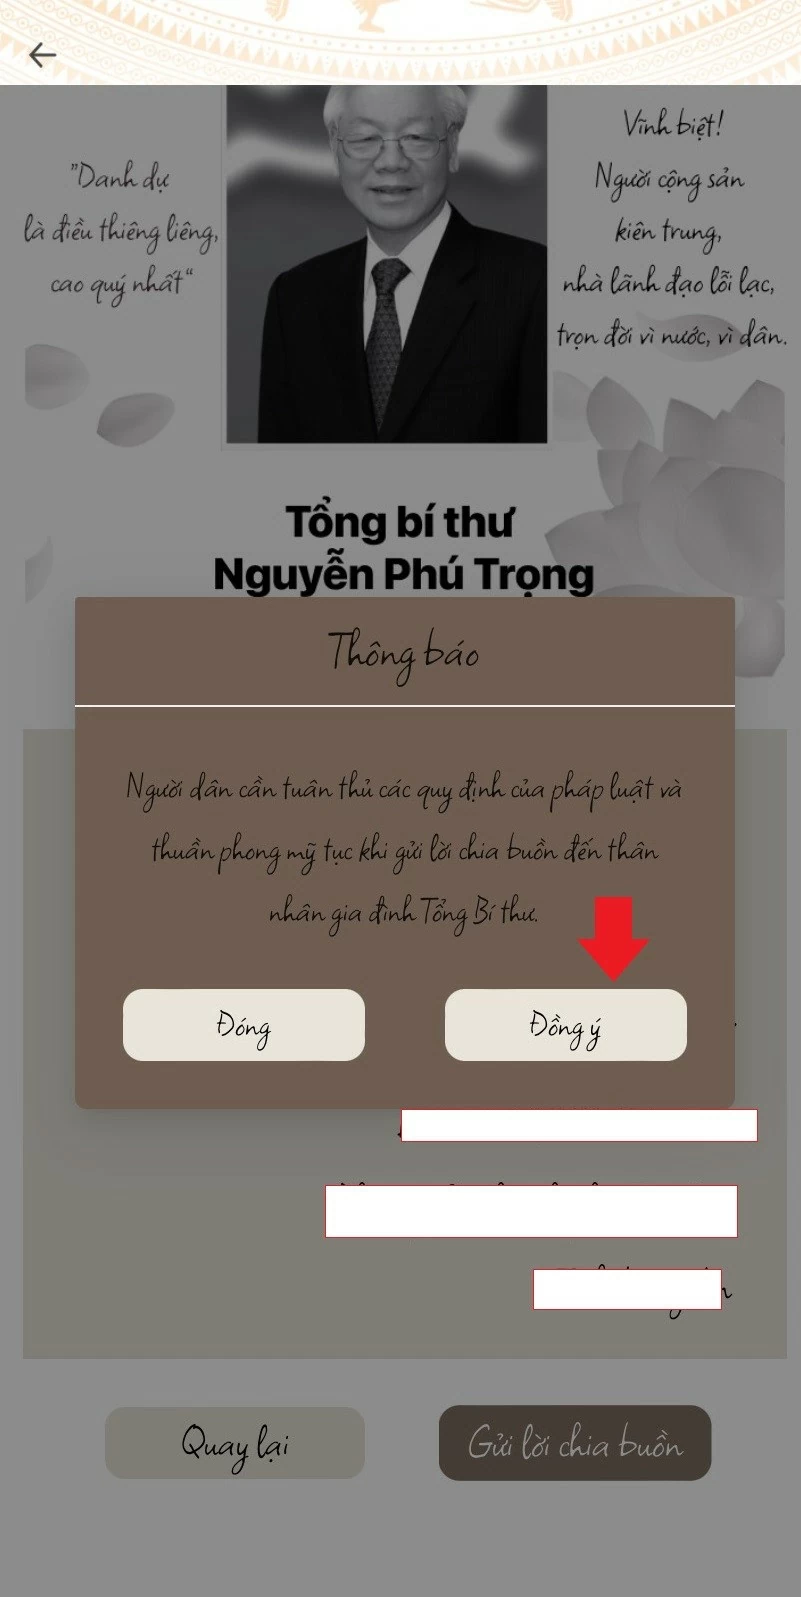 Cách người dân có thể online gửi lời chia buồn, tri ân Tổng Bí thư Nguyễn Phú Trọng trên VNeID